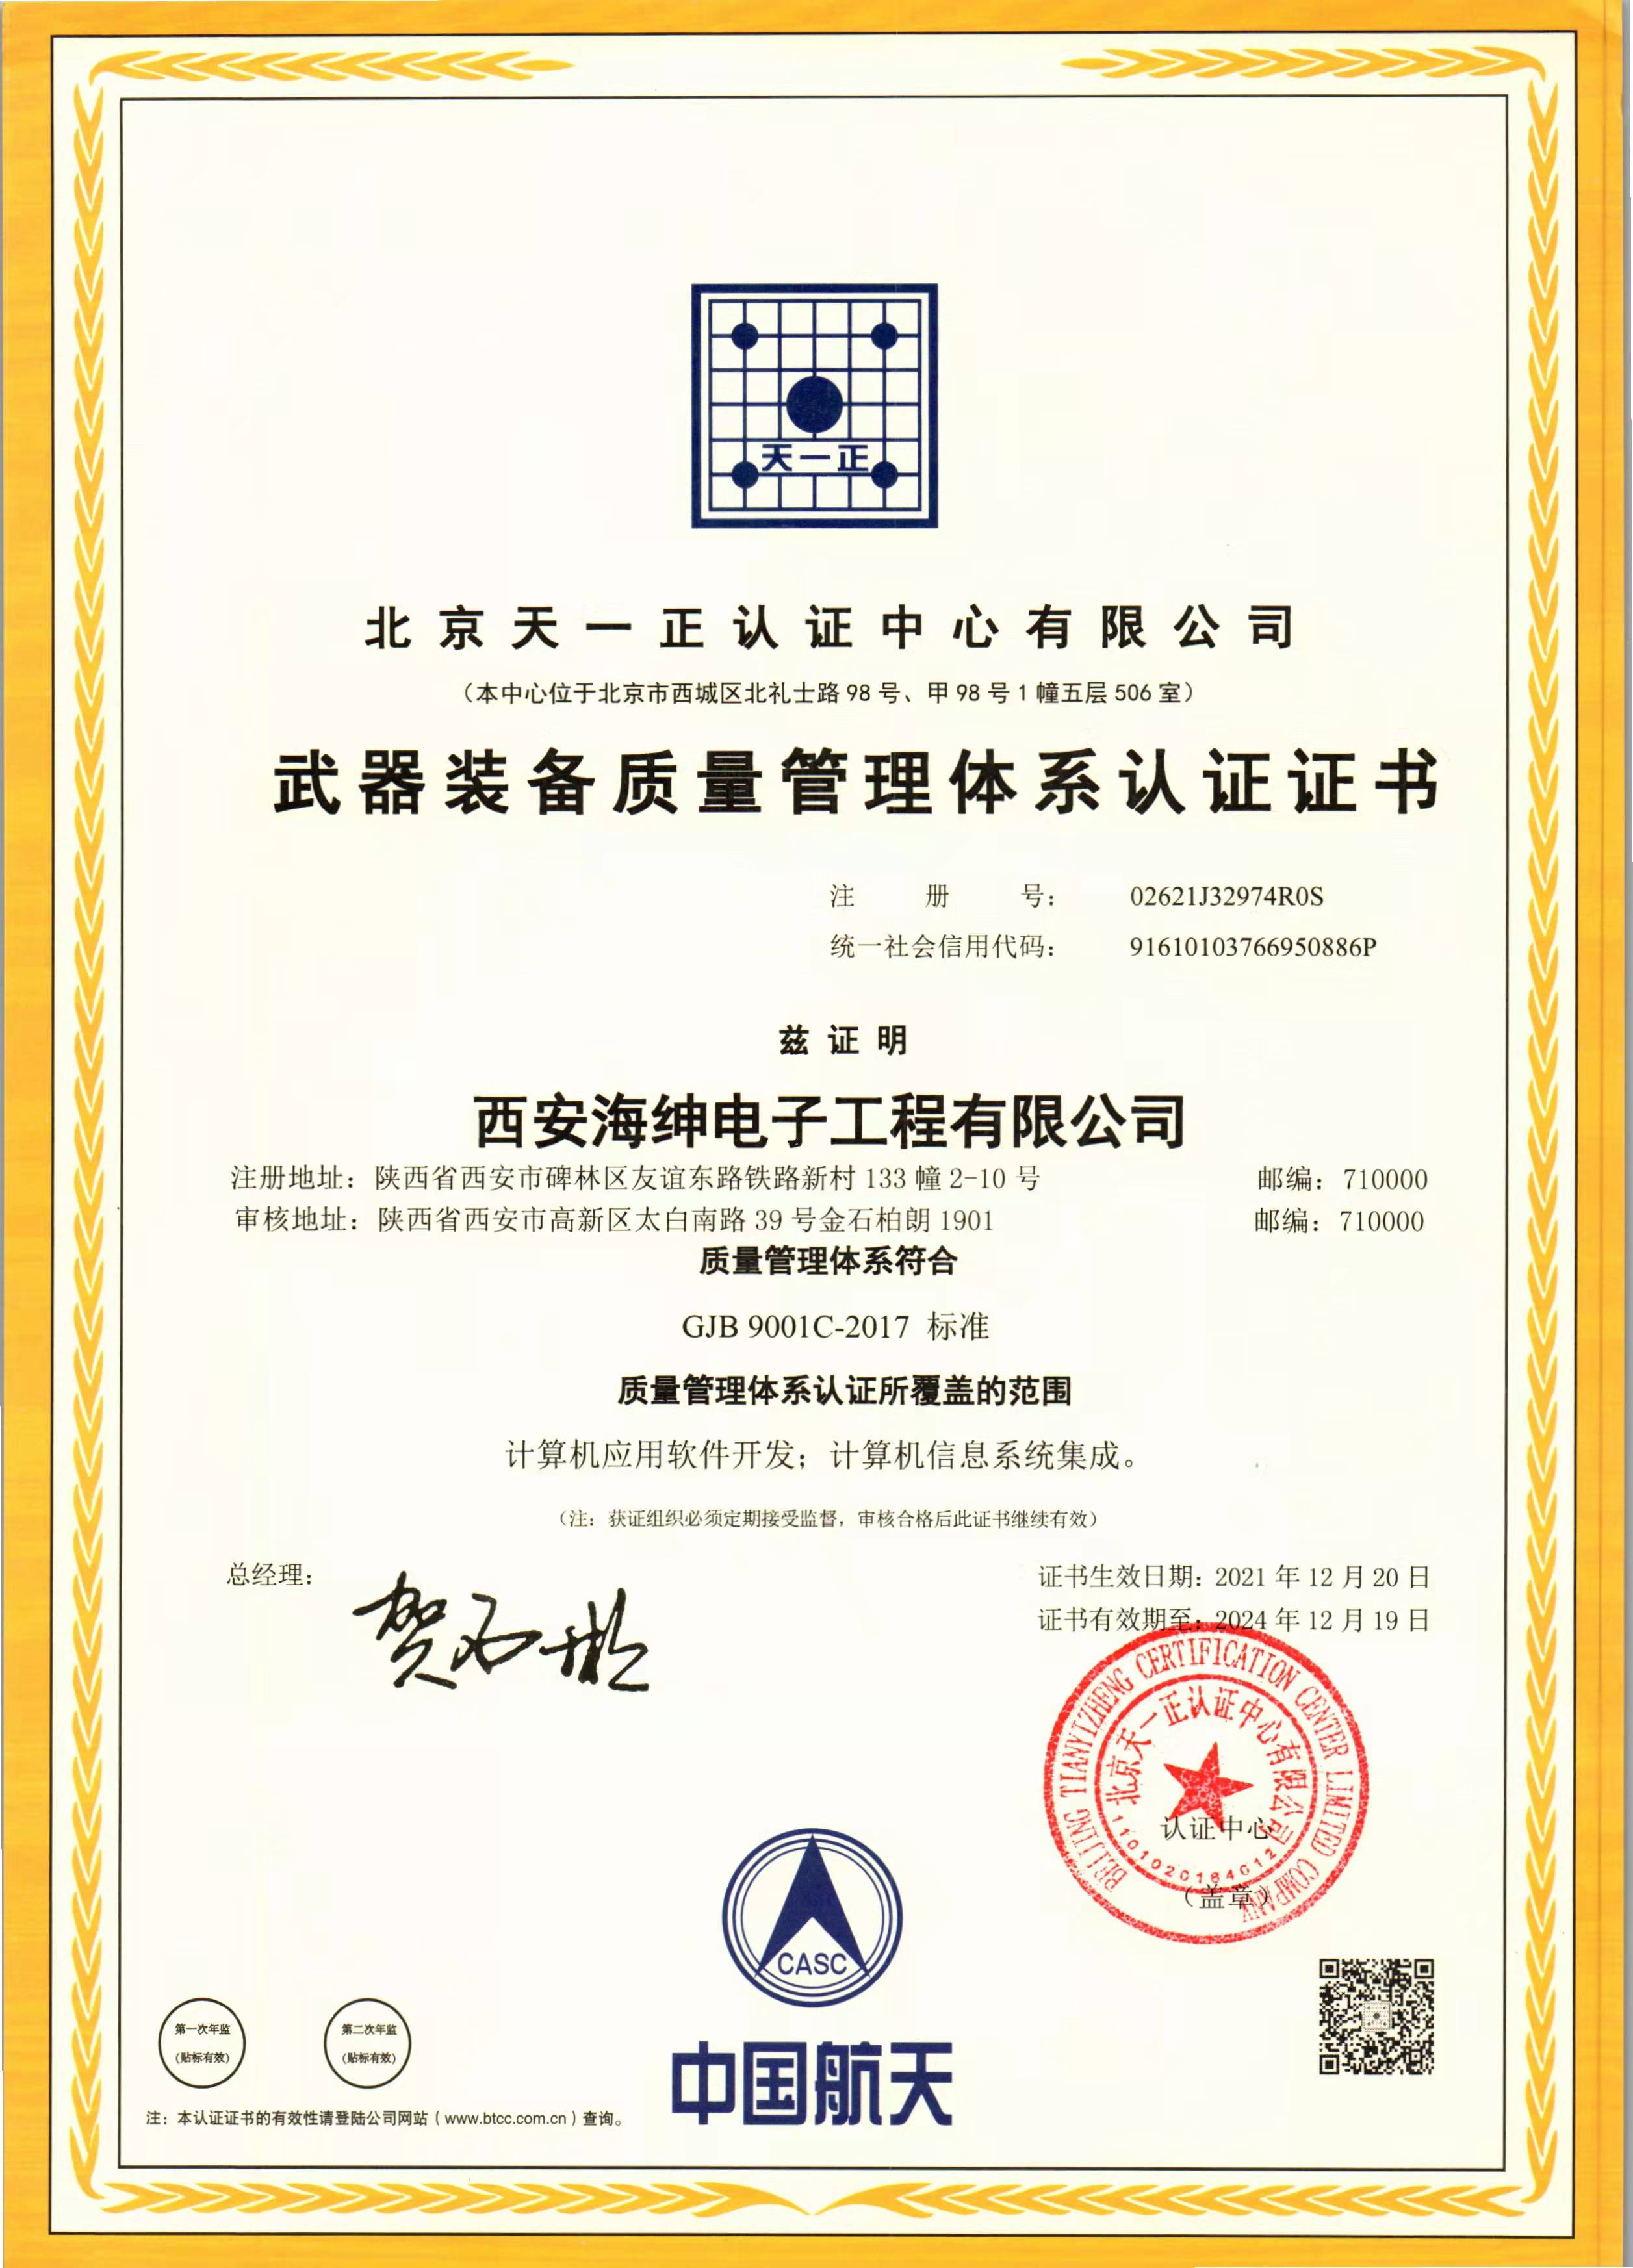 恭喜西安《海坤电子工程有限公司》顺利通过审核获得武器装备质量管理体系认证证书